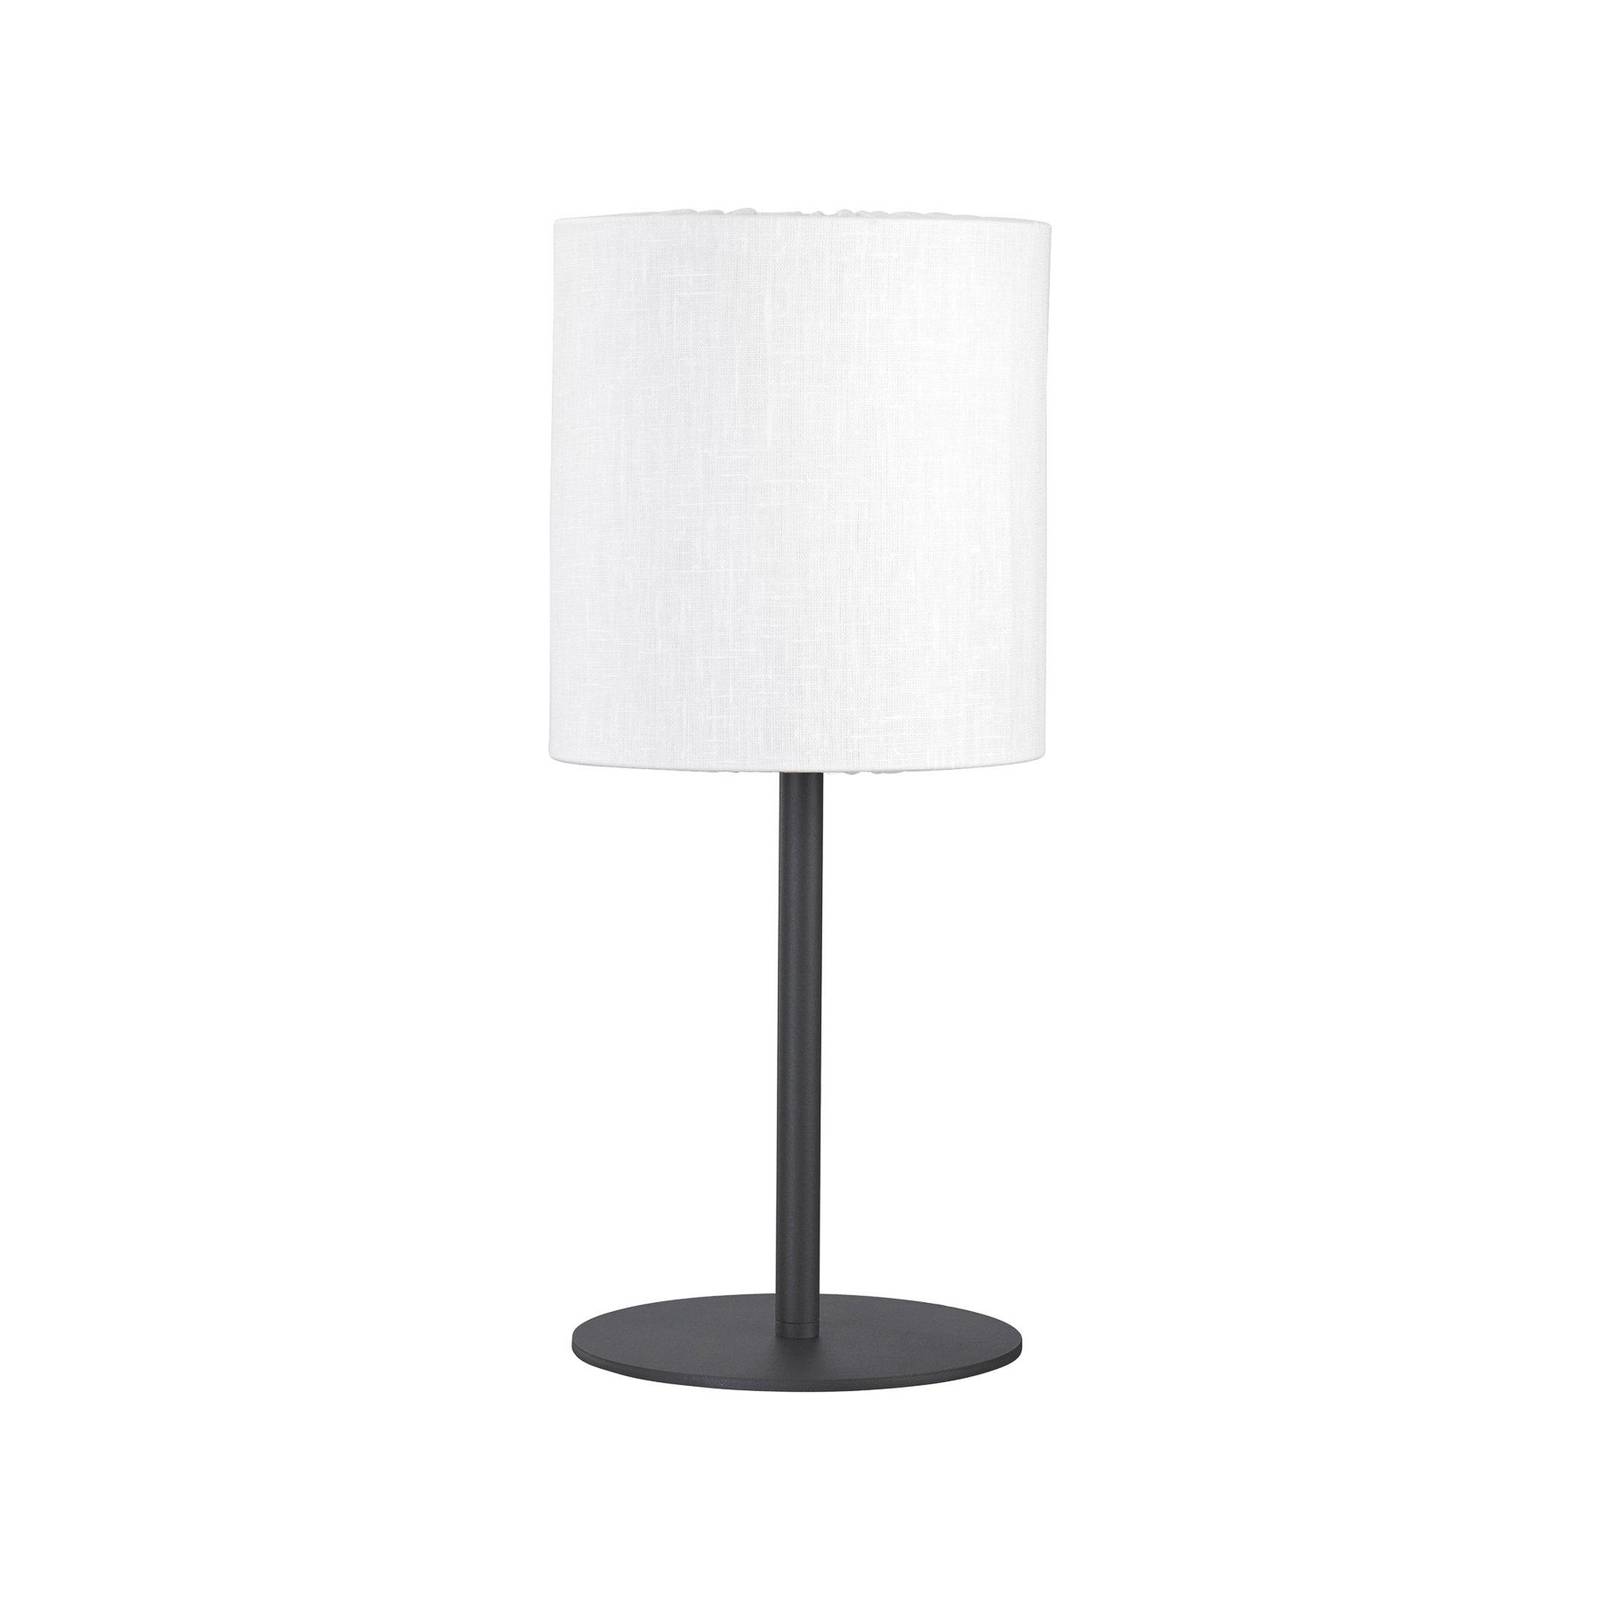 Image of PR Home lampada da tavolo per esterni Agnar, grigio scuro / bianco, 57 cm